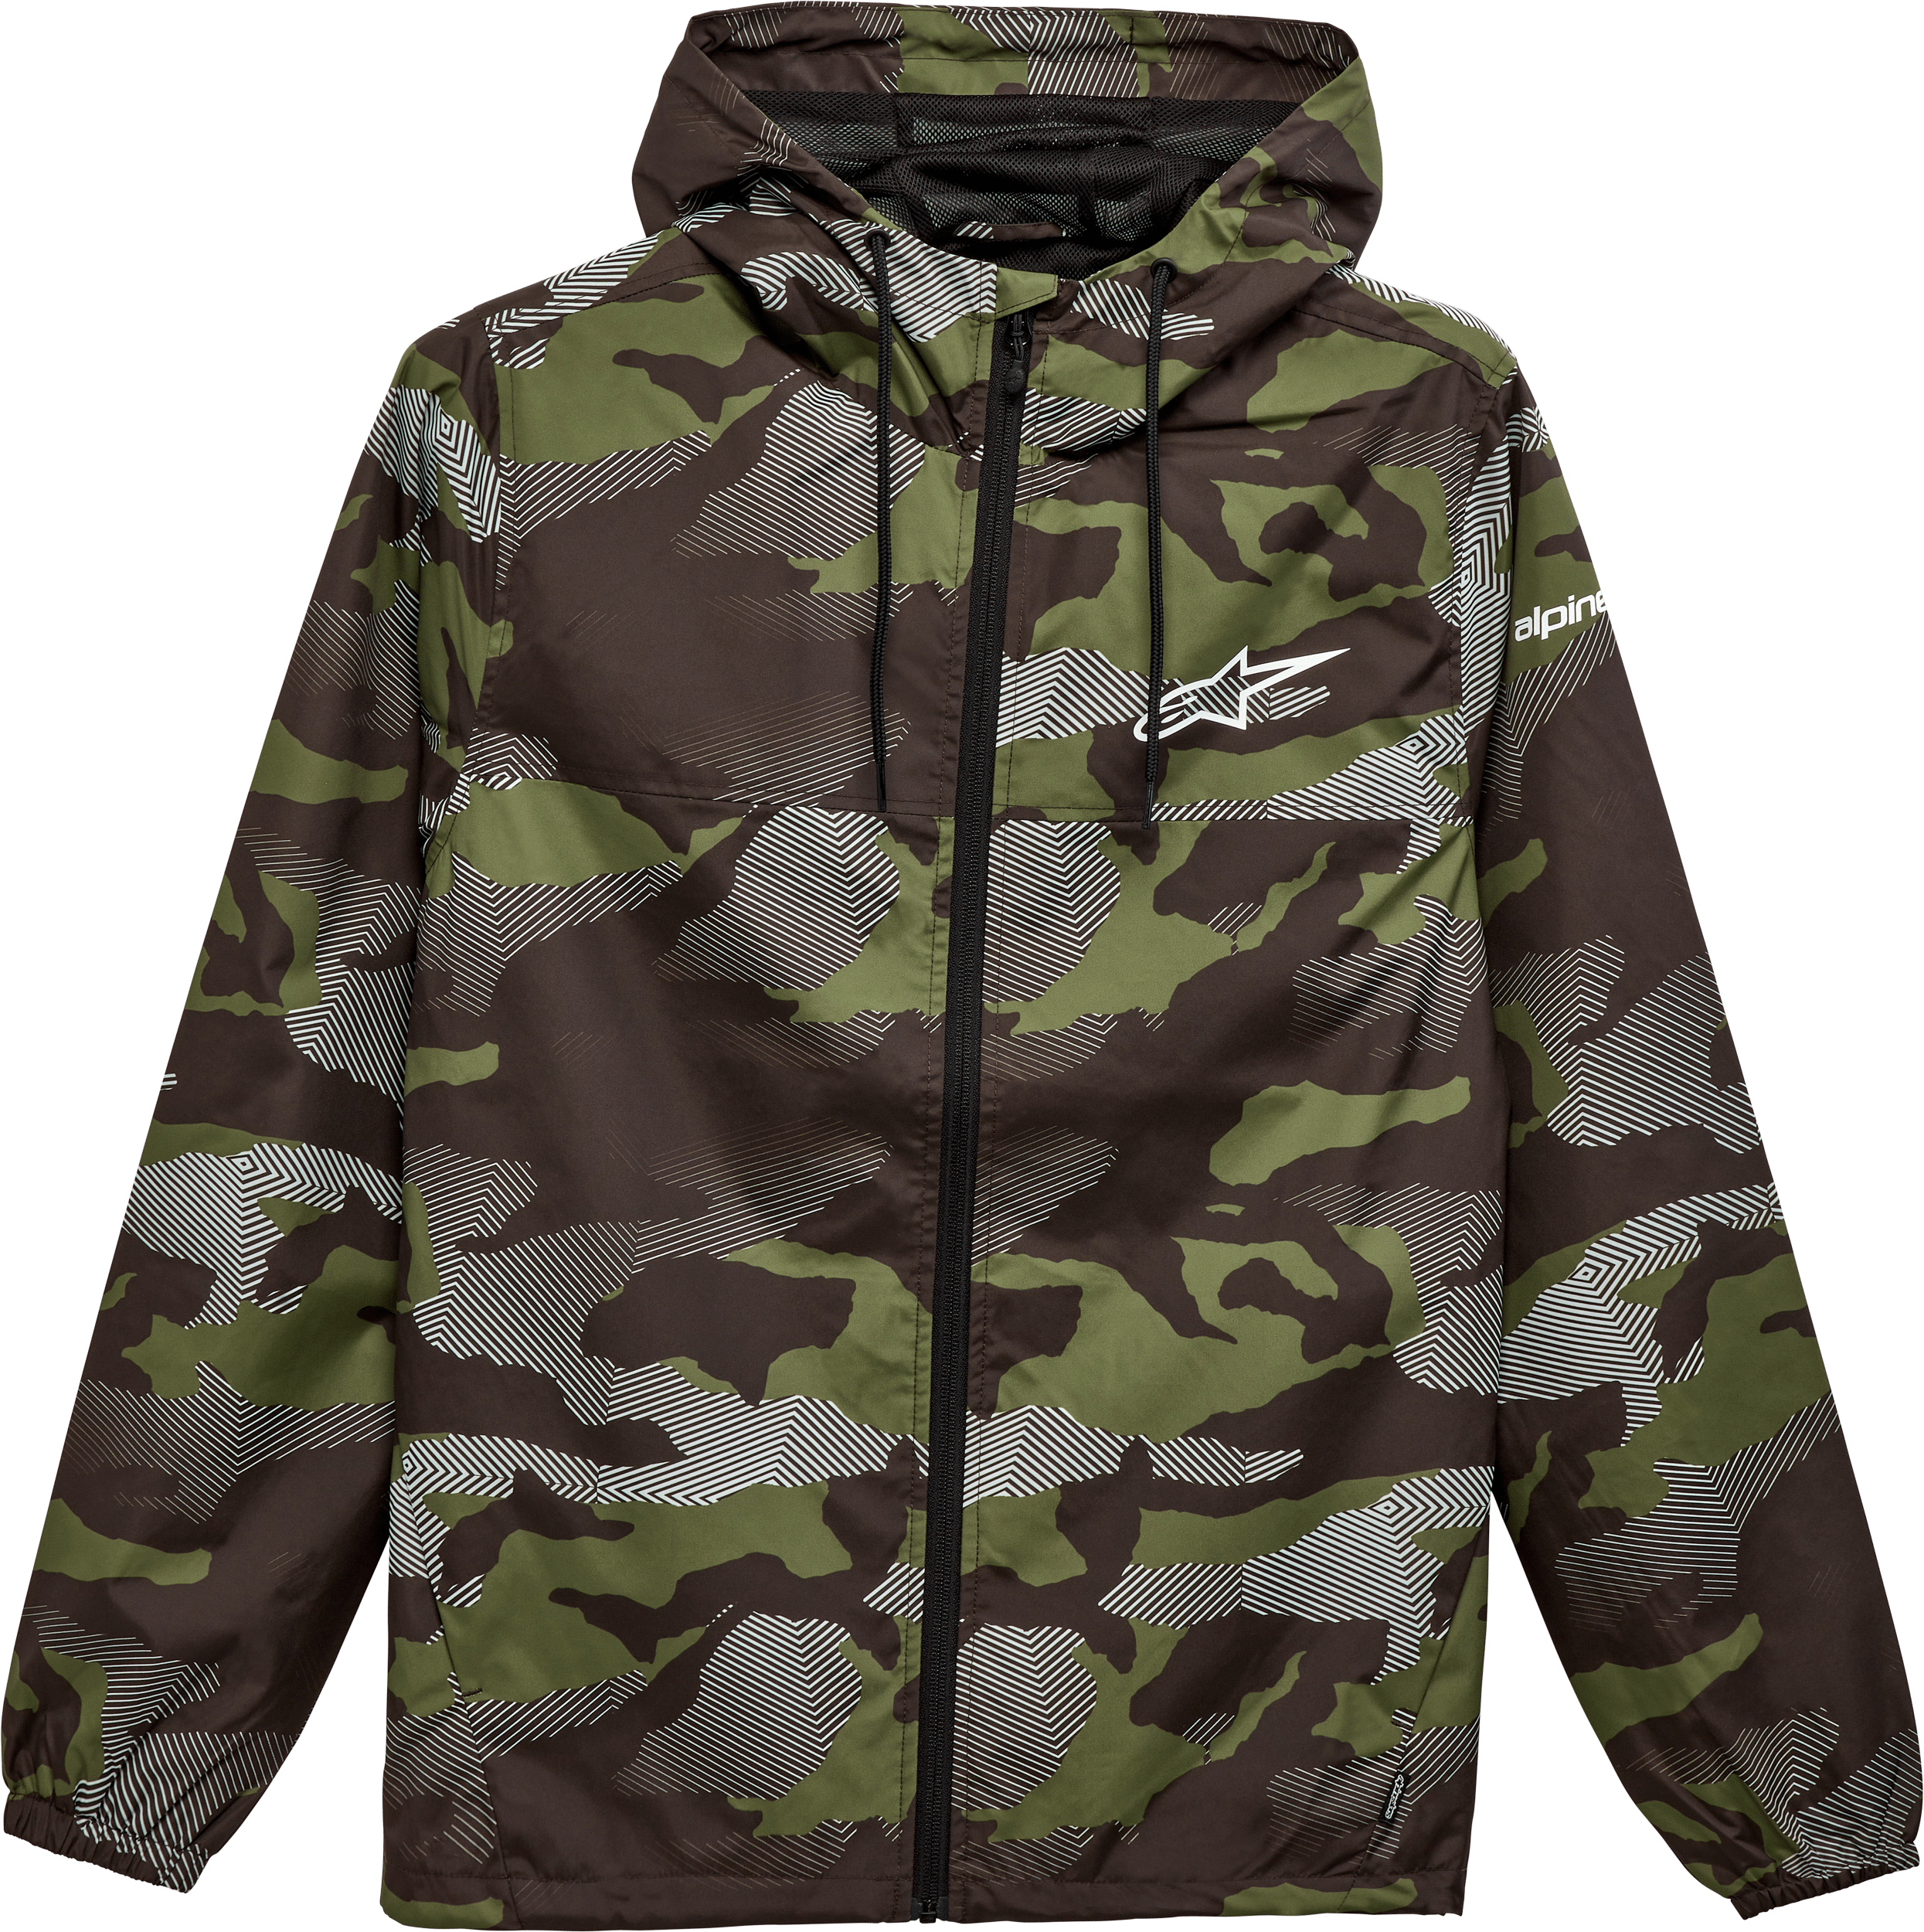 Western Powersports Jacket Camouflage / 2X Treq Windbreaker By Alpinestars 1232-11020-633-XXL